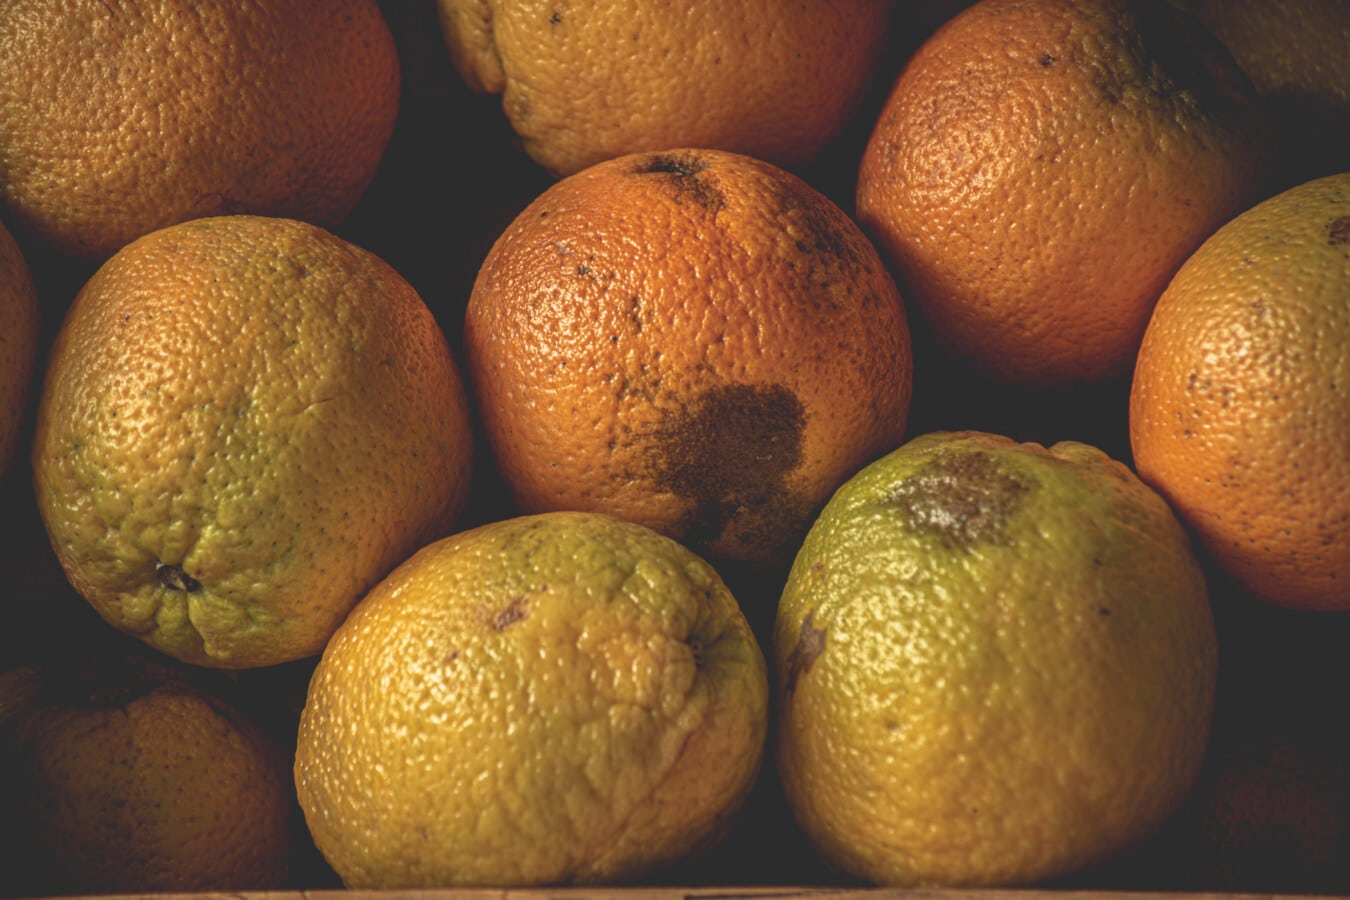 πορτοκάλια, βιολογικά, φλούδα πορτοκαλιού, αγορά, προϊόντα, βιταμίνη, φρούτα, εσπεριδοειδή, πορτοκαλί, φρέσκο